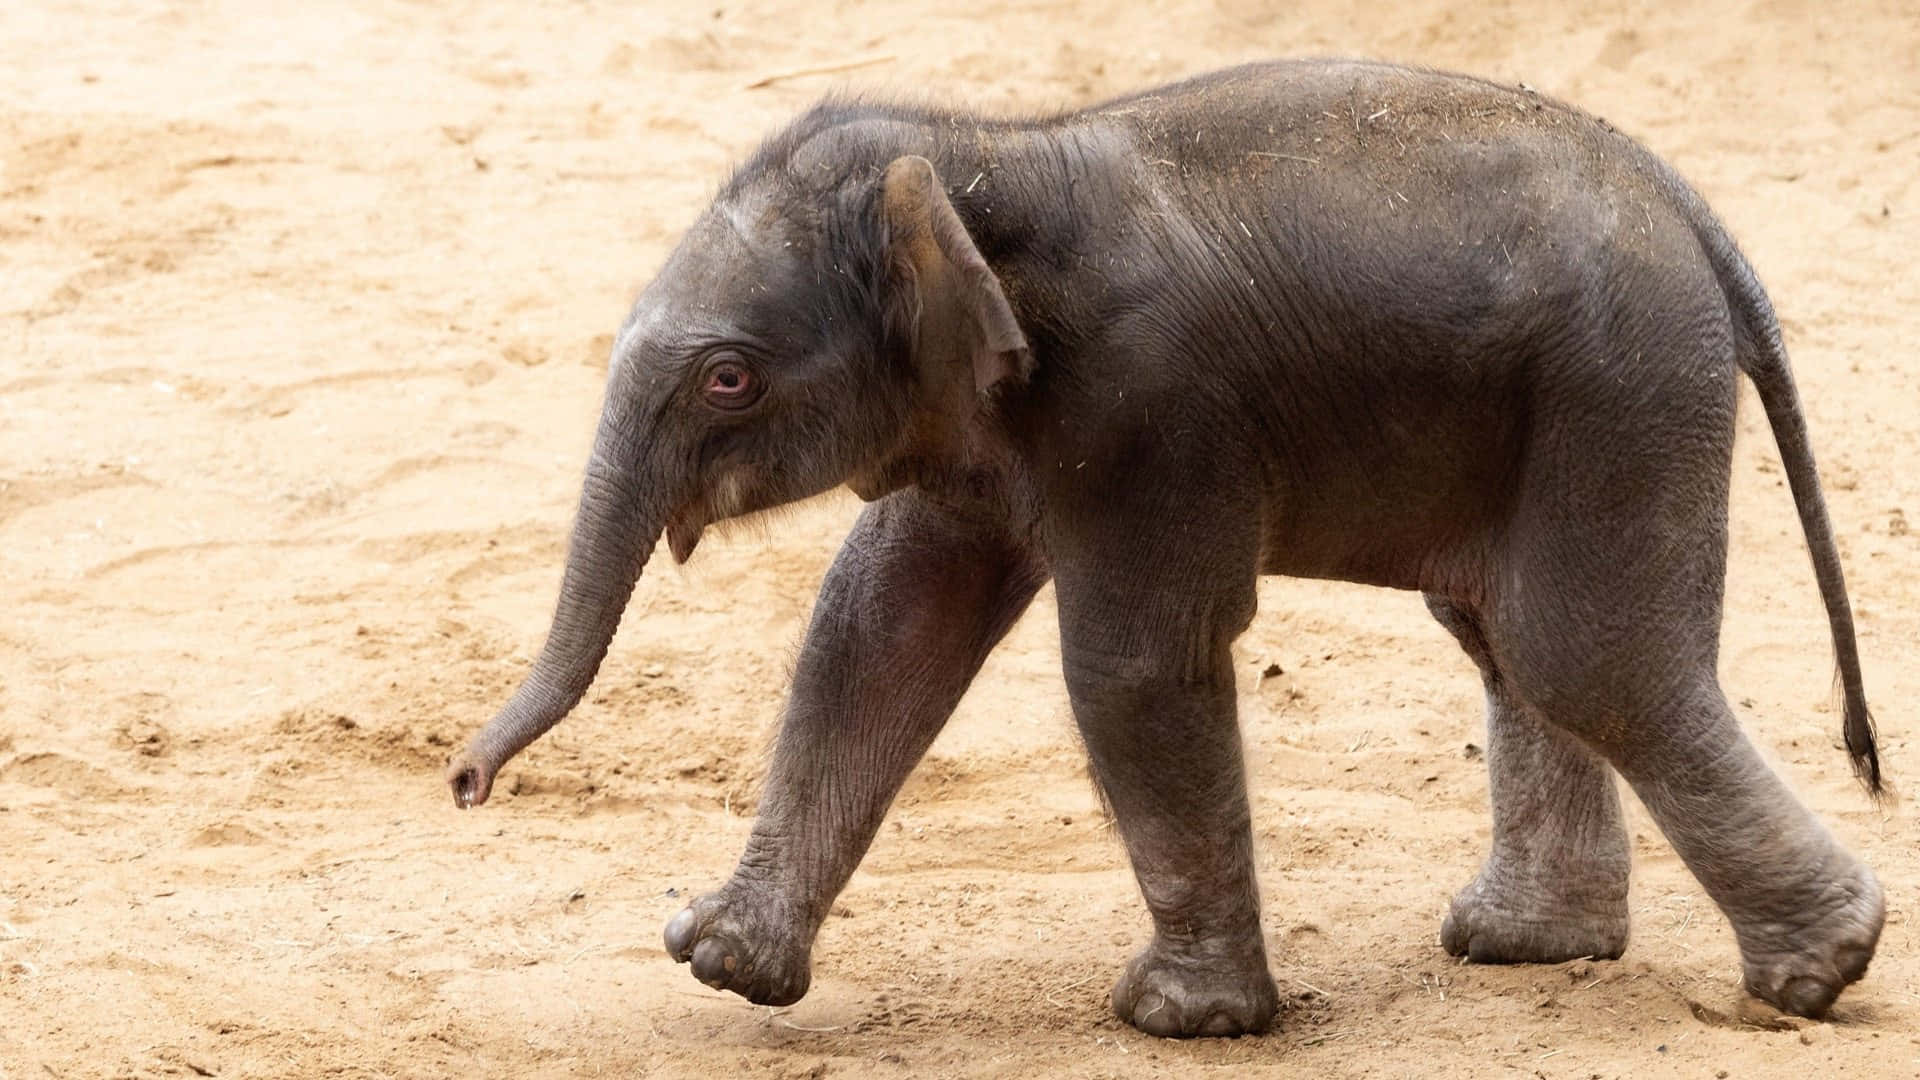 Imagende Un Elefante Bebé Delicado